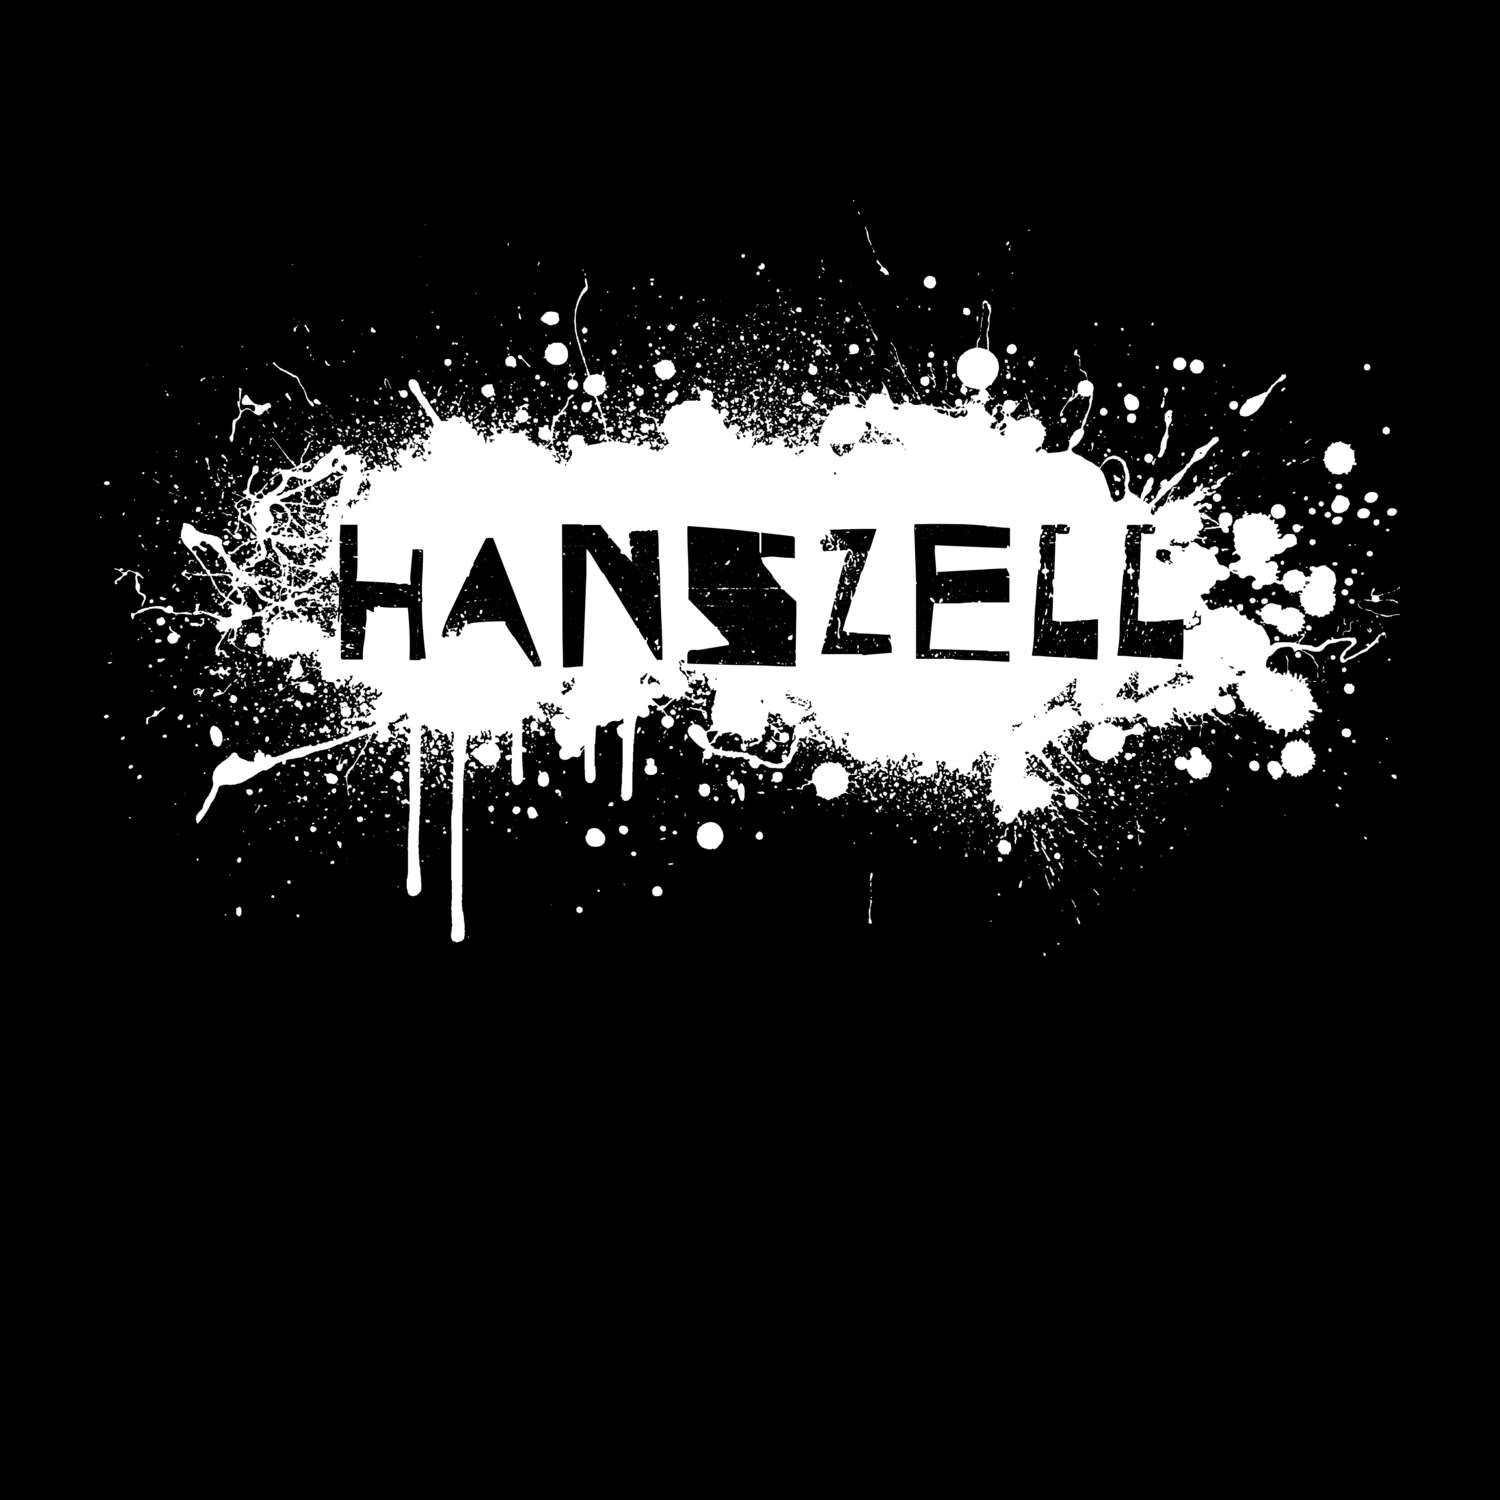 Hanszell T-Shirt »Paint Splash Punk«